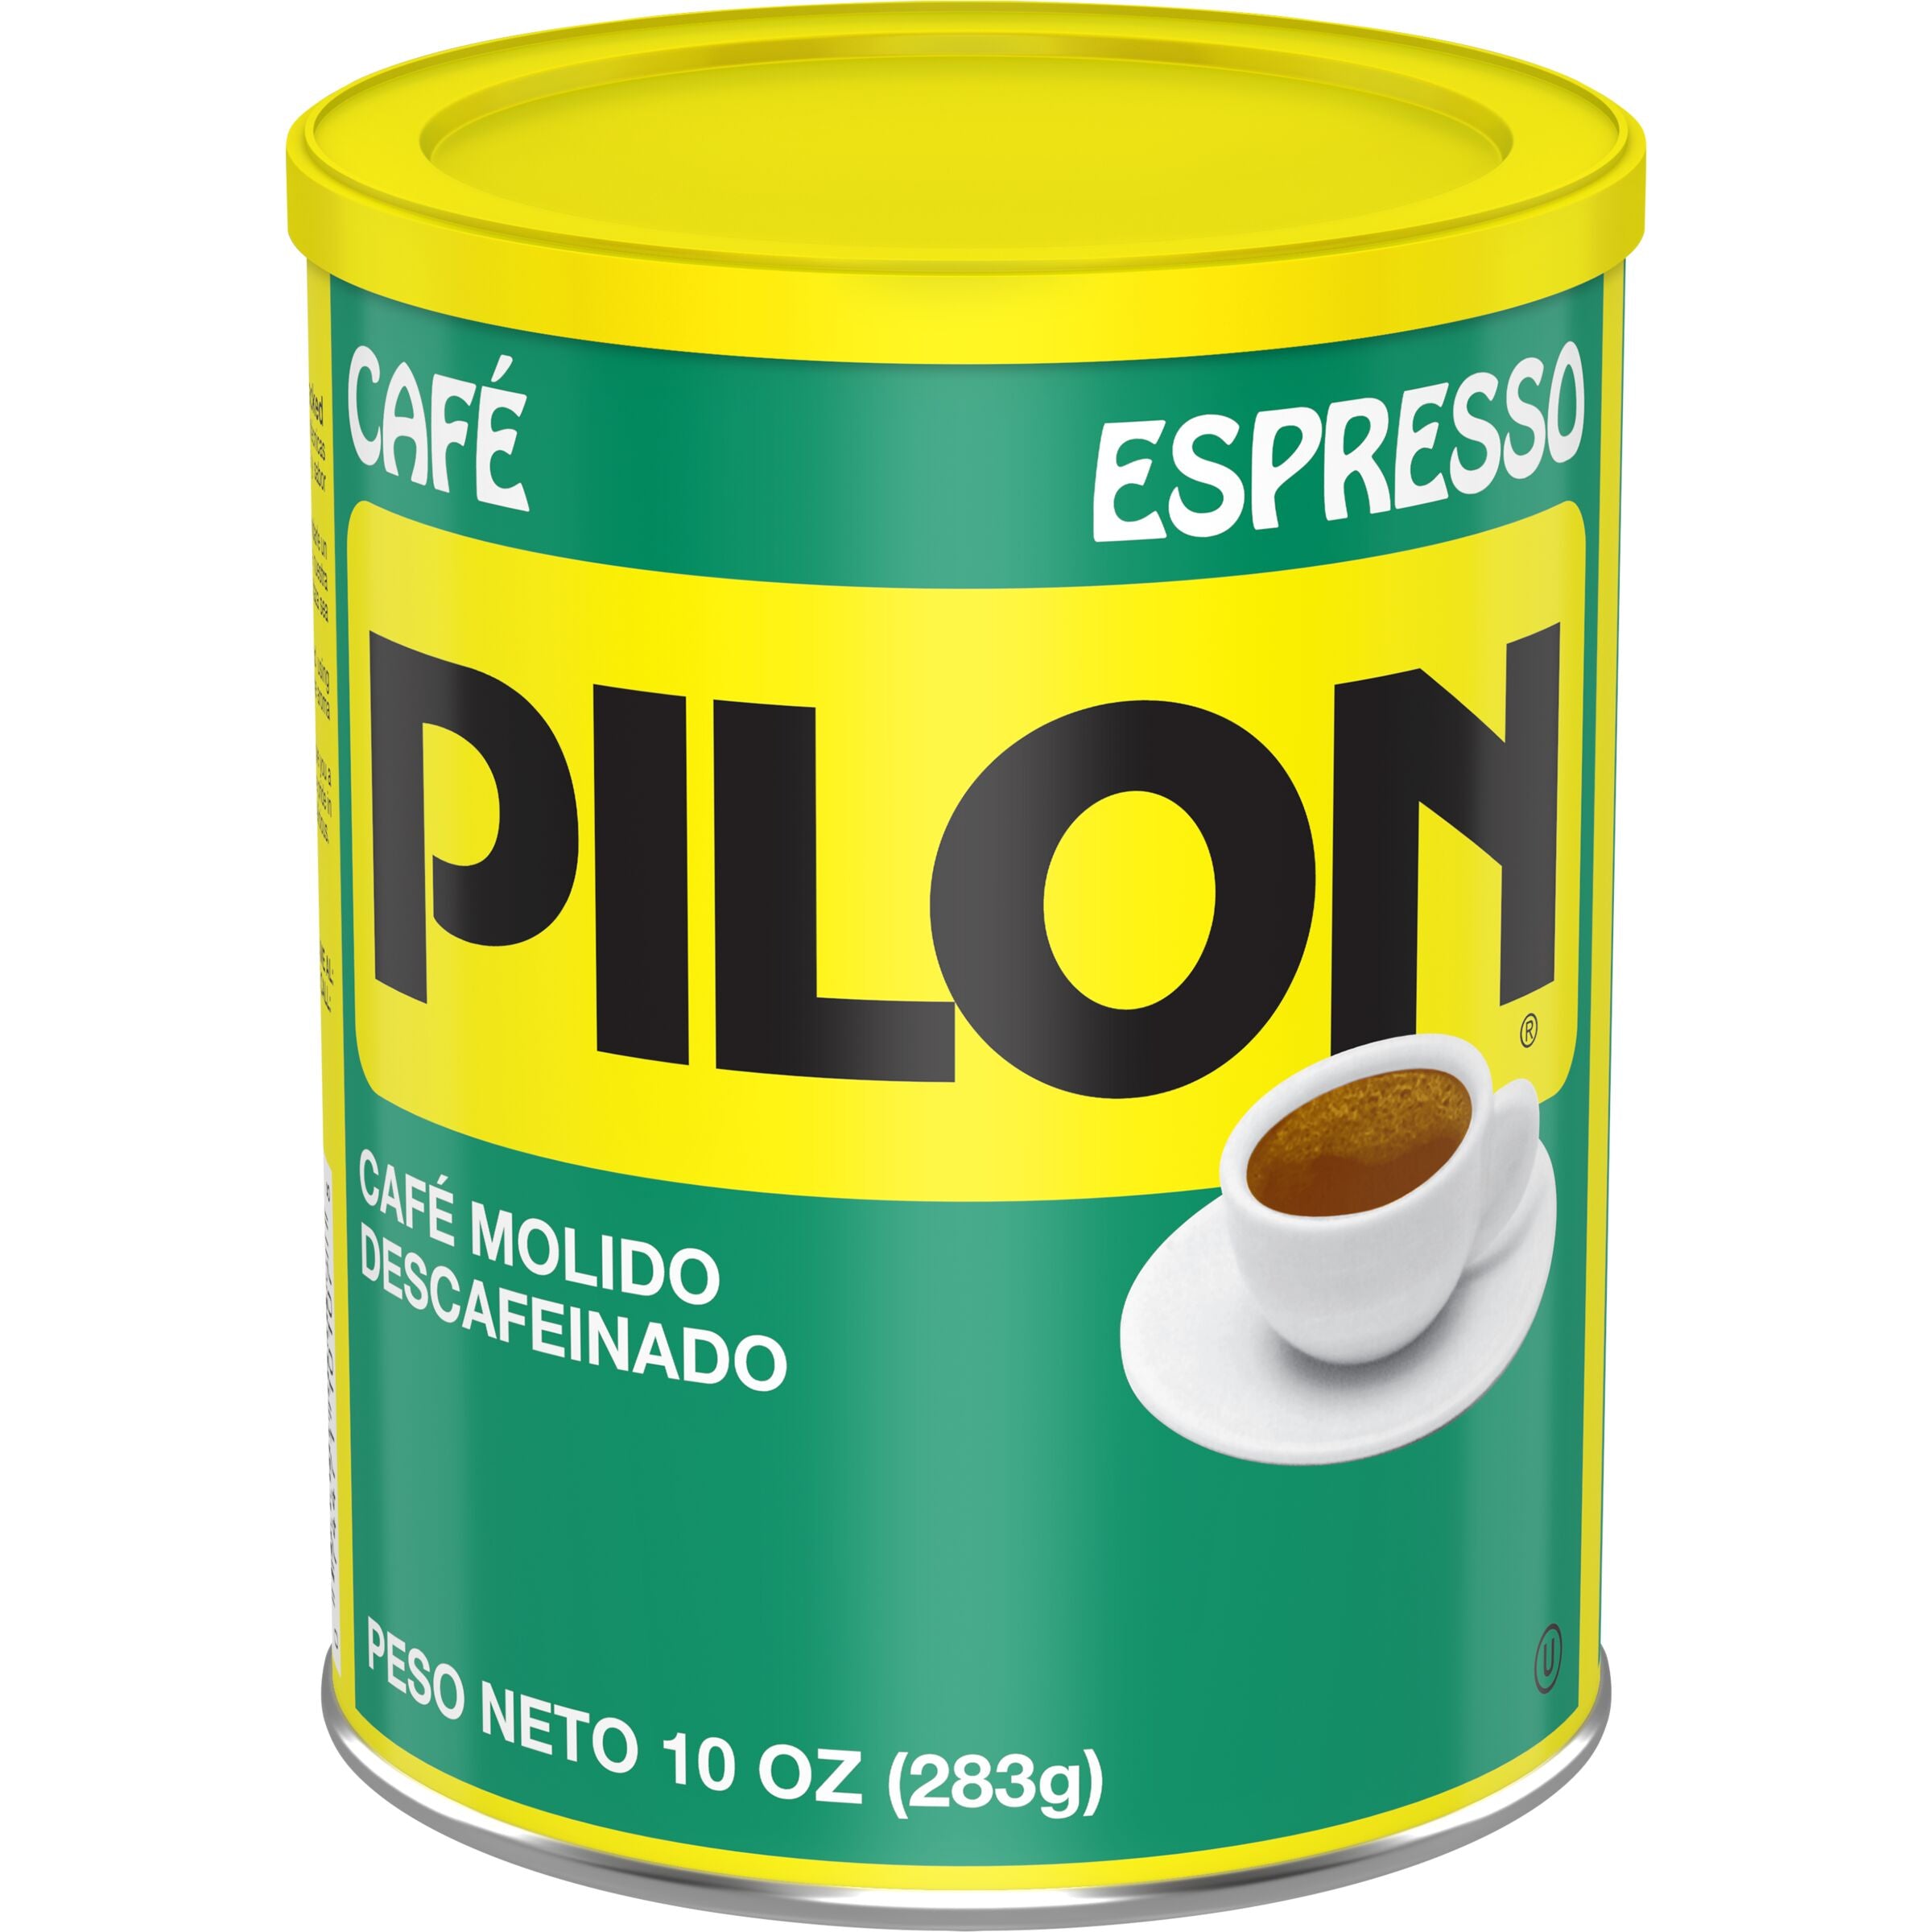 Cafe Pilon Decaf Espresso, Ground Coffee Can, 10 oz